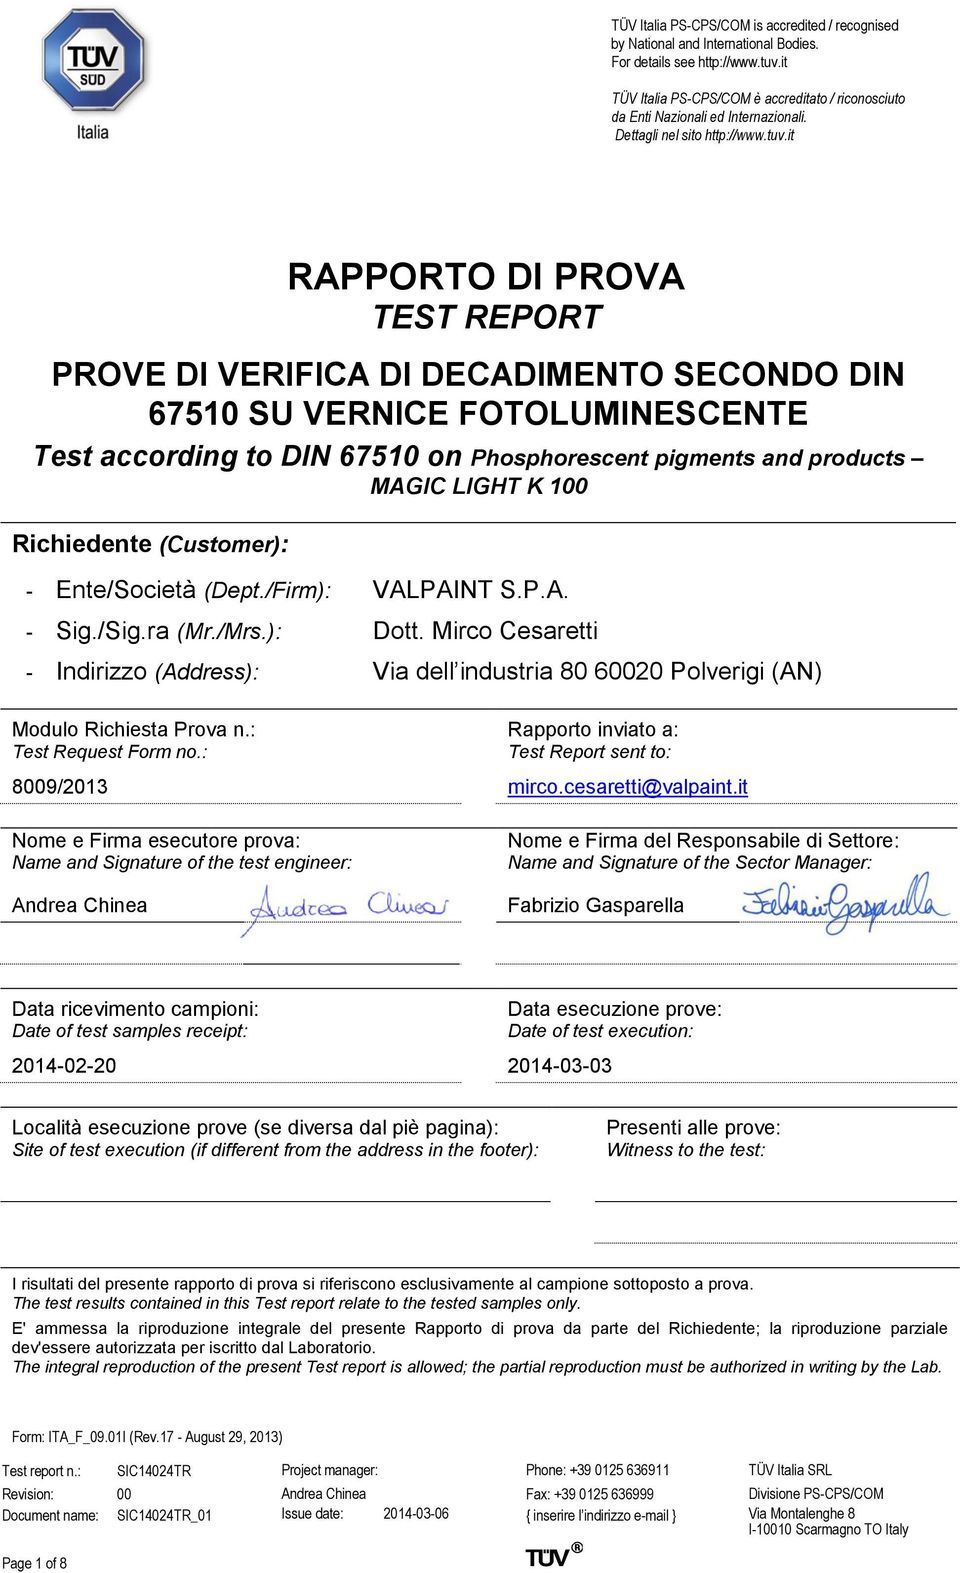 Mirco Cesaretti - Indirizzo (Address): Via dell industria 80 60020 Polverigi (AN) Modulo Richiesta Prova n.: Test Request Form no.: Rapporto inviato a: Test Report sent to: 8009/2013 mirco.